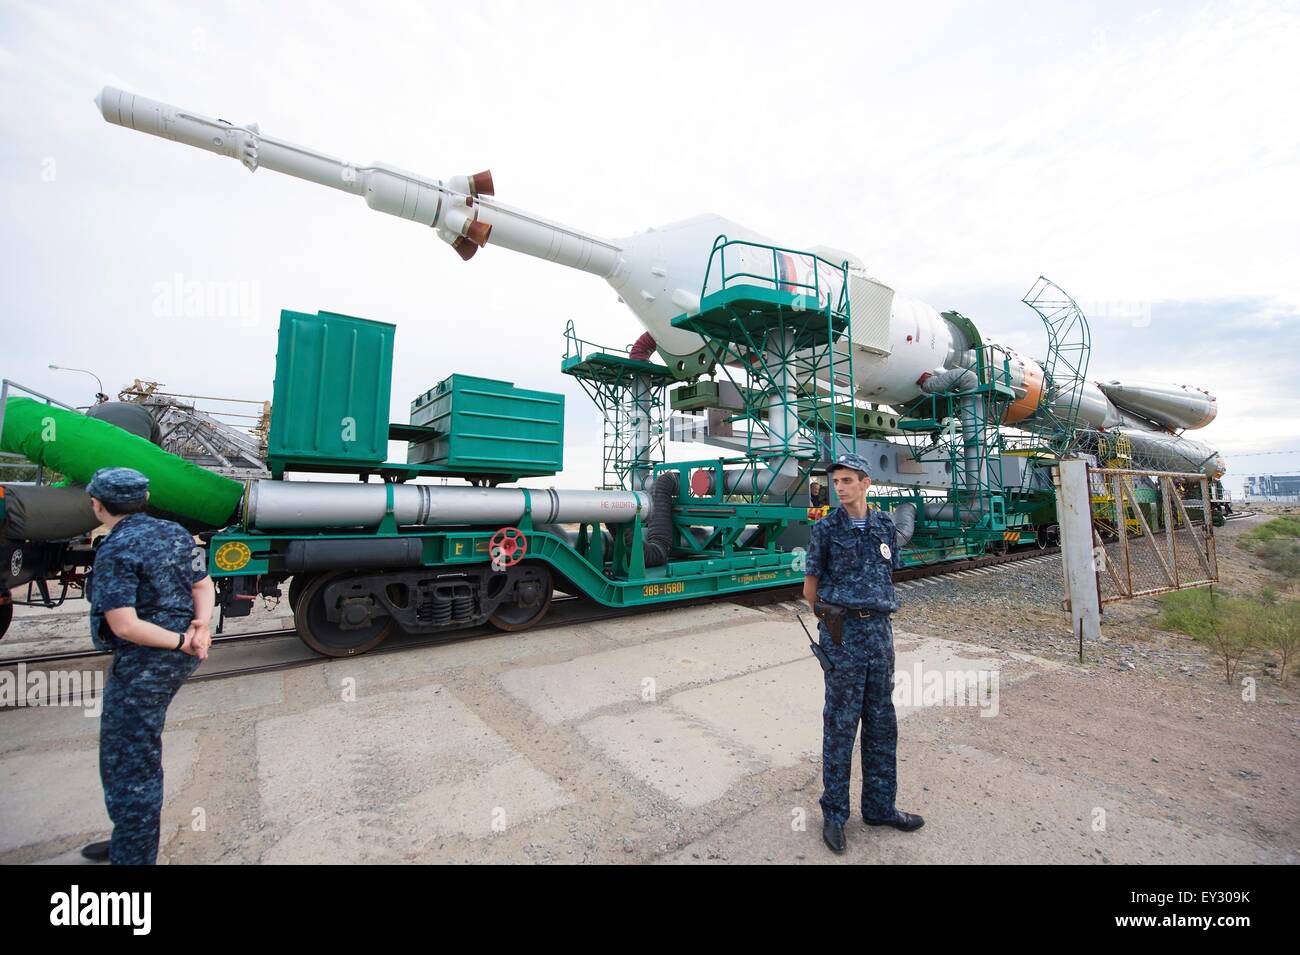 Cosmodromo di Baikonur in Kazakhstan. Il 20 luglio, 2015. Il Soyuz TMA-17M veicolo spaziale è rotolato fuori dal treno per il lancio al cosmodromo di Baikonur Luglio 20, 2015 in Kazakistan. Lancio del razzo Soyuz è prevista per il mese di luglio 23 e porterà Expedition 44 equipaggio alla Stazione spaziale internazionale. Foto Stock